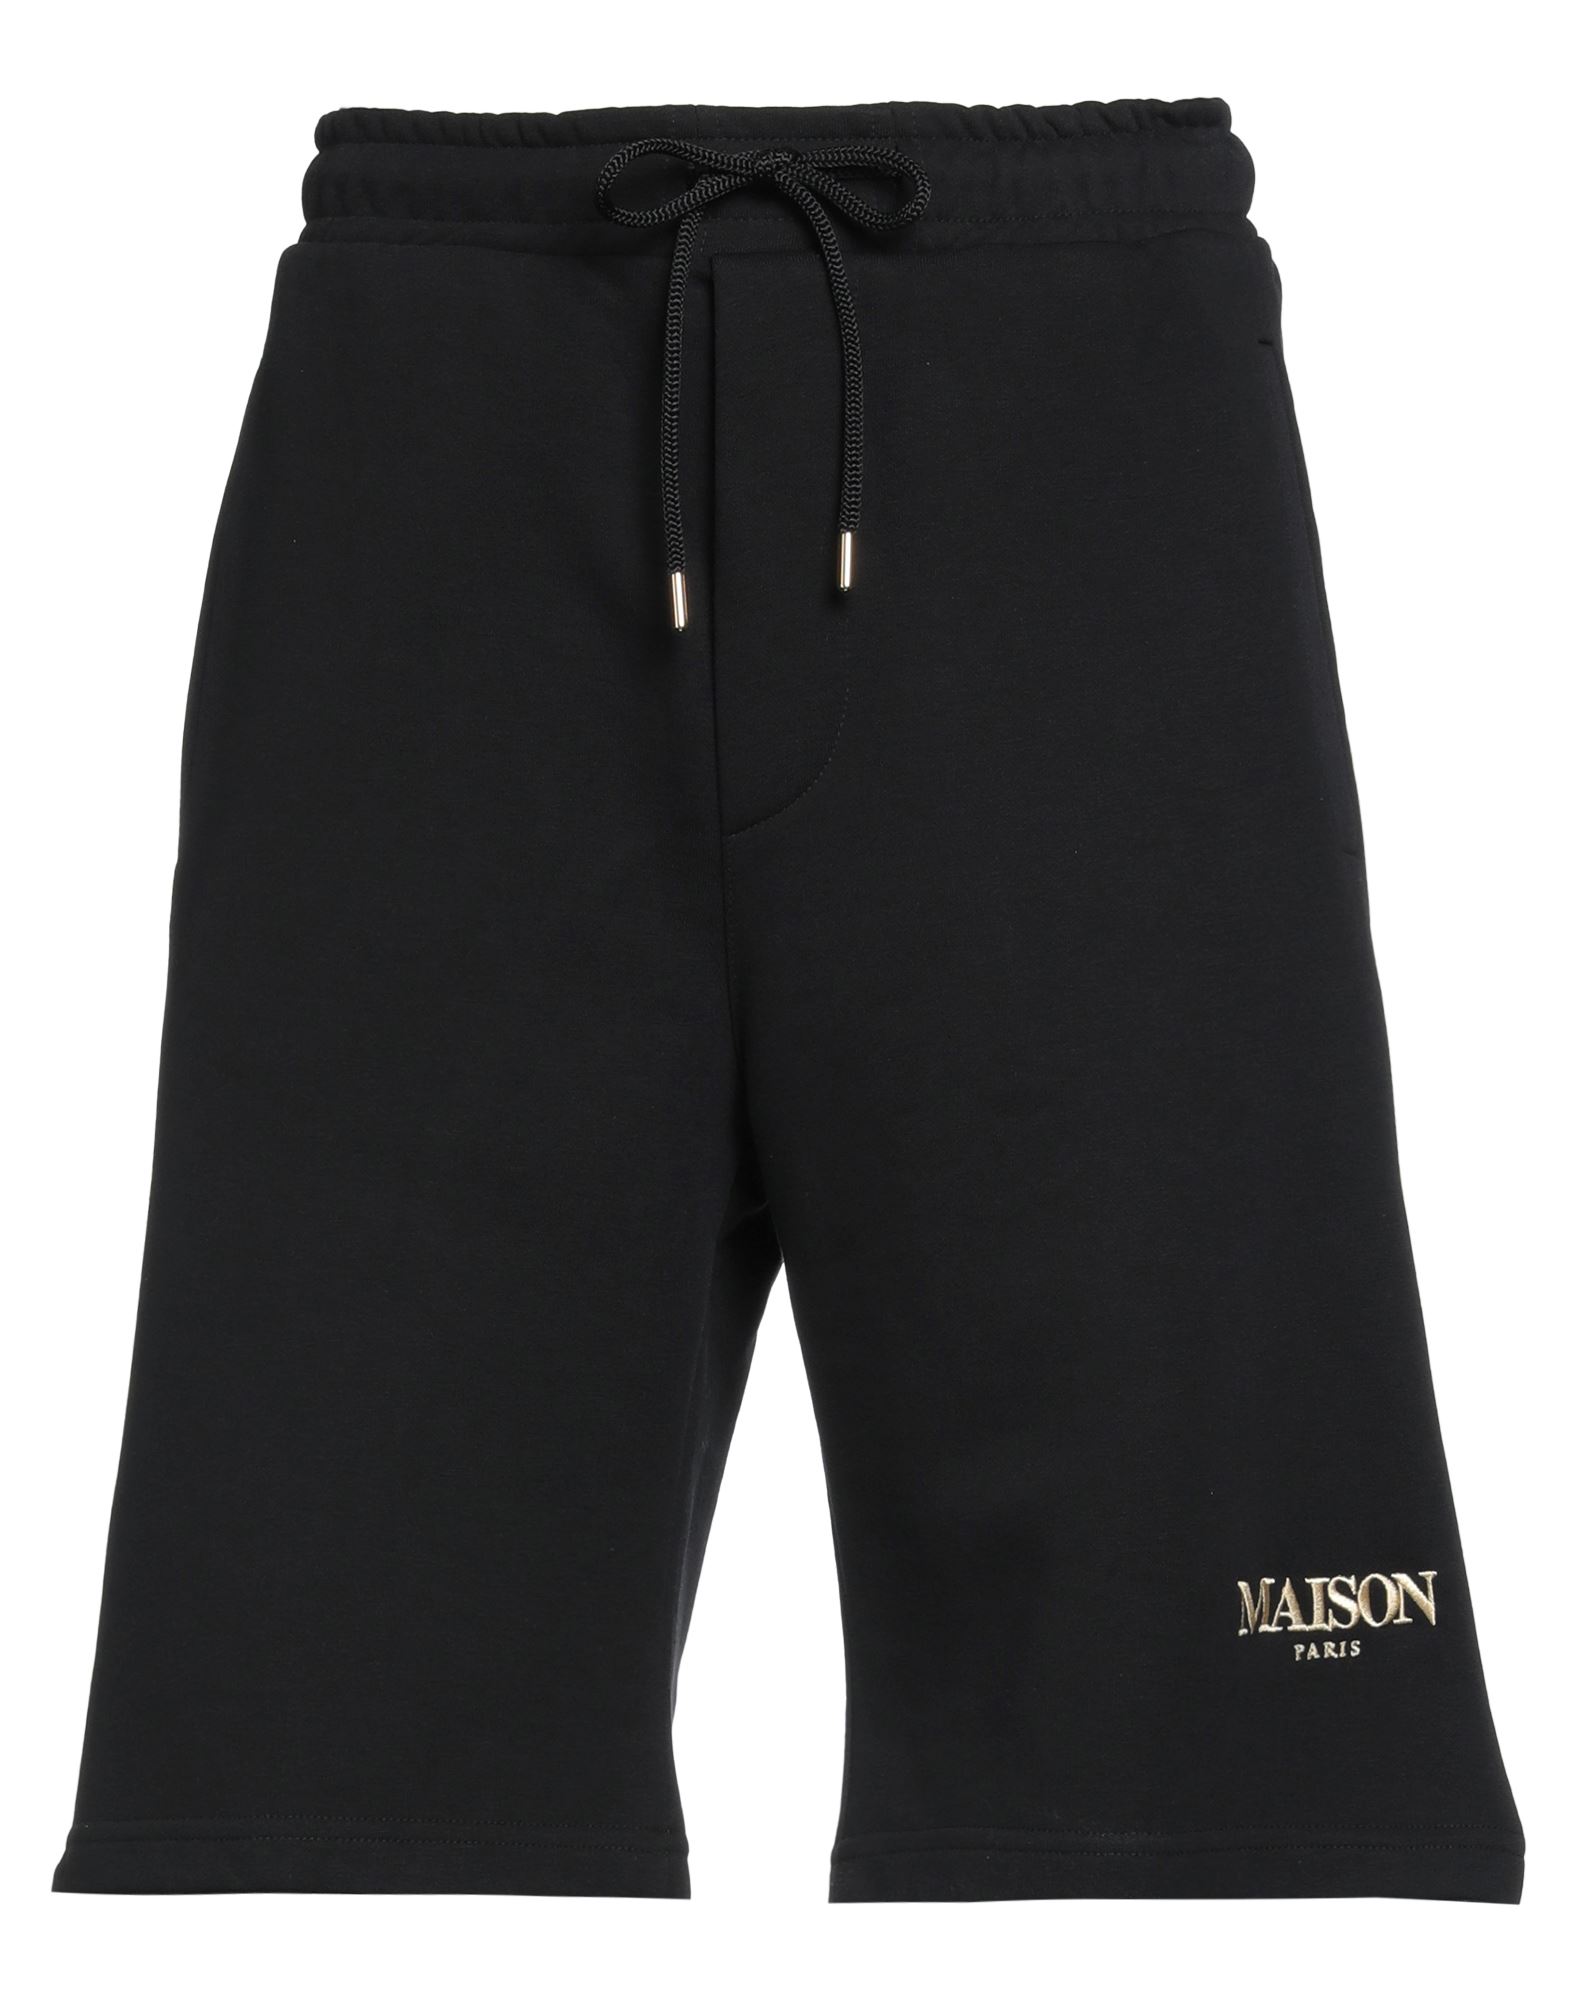 Maison 9 Paris Man Shorts & Bermuda Shorts Black Size Xl Cotton